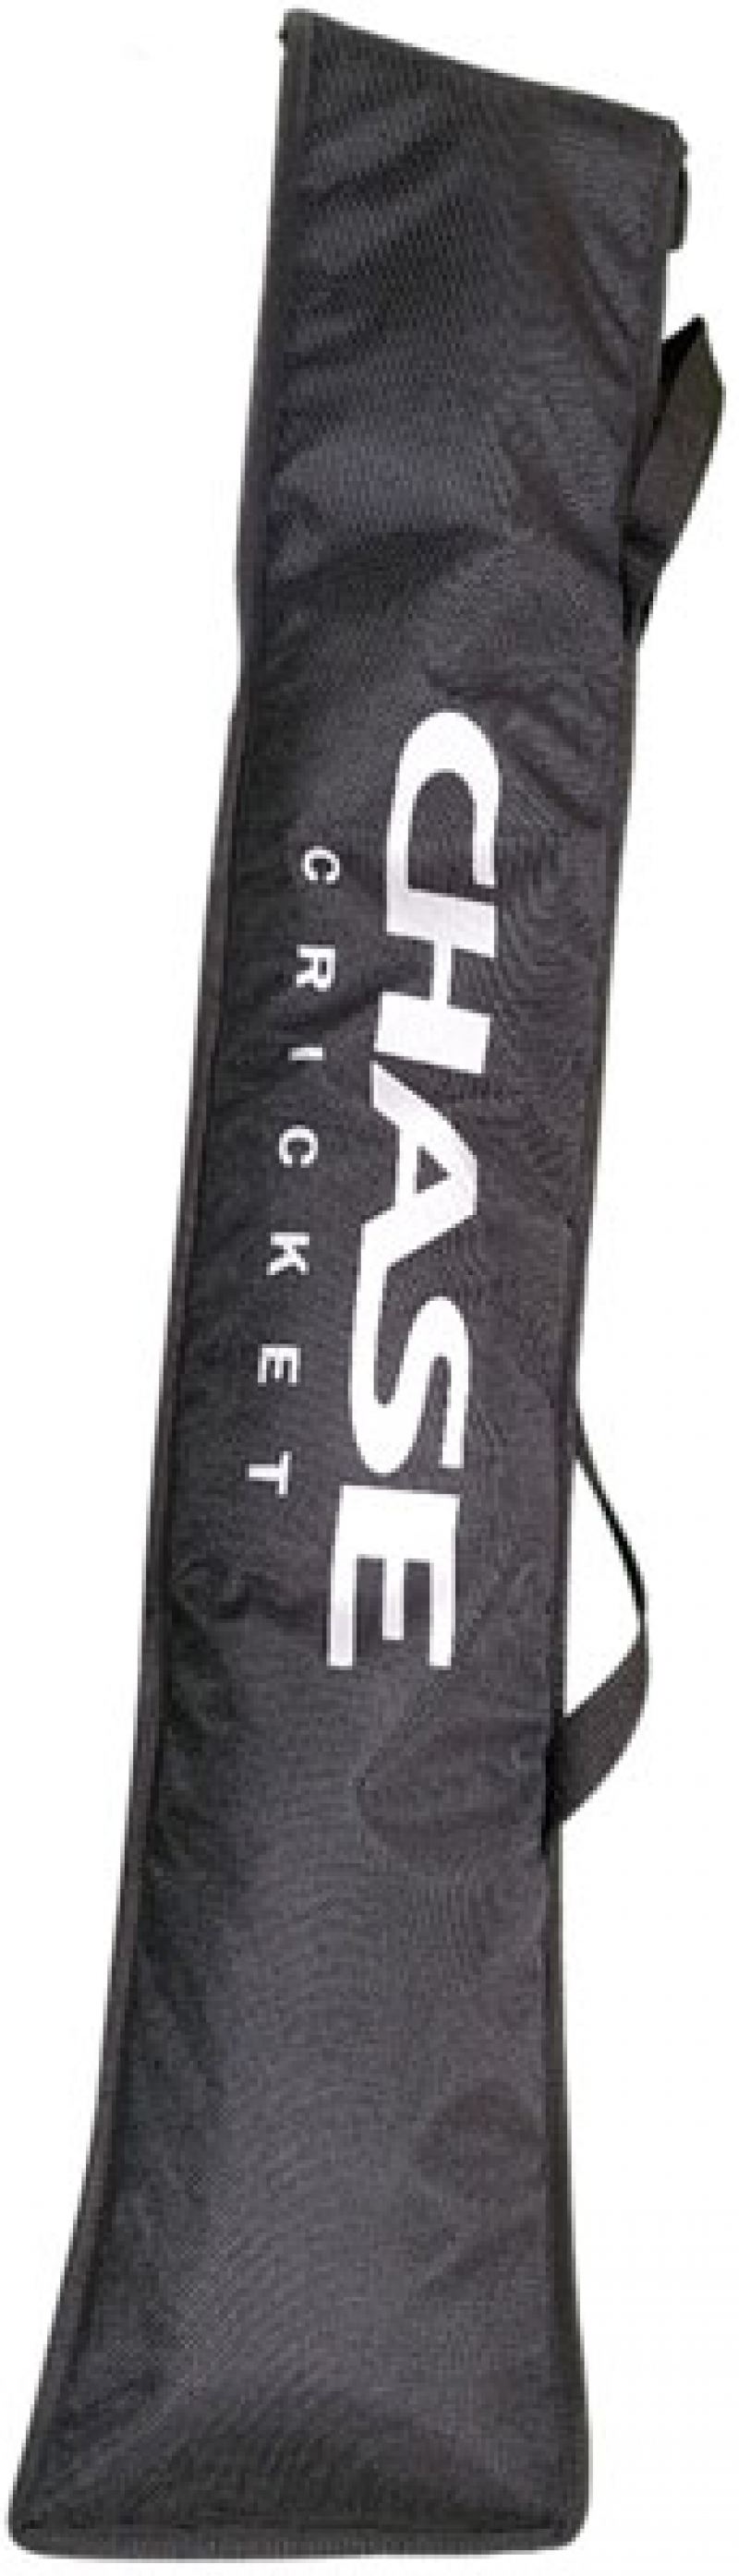 Chase Full Length Bat Cover